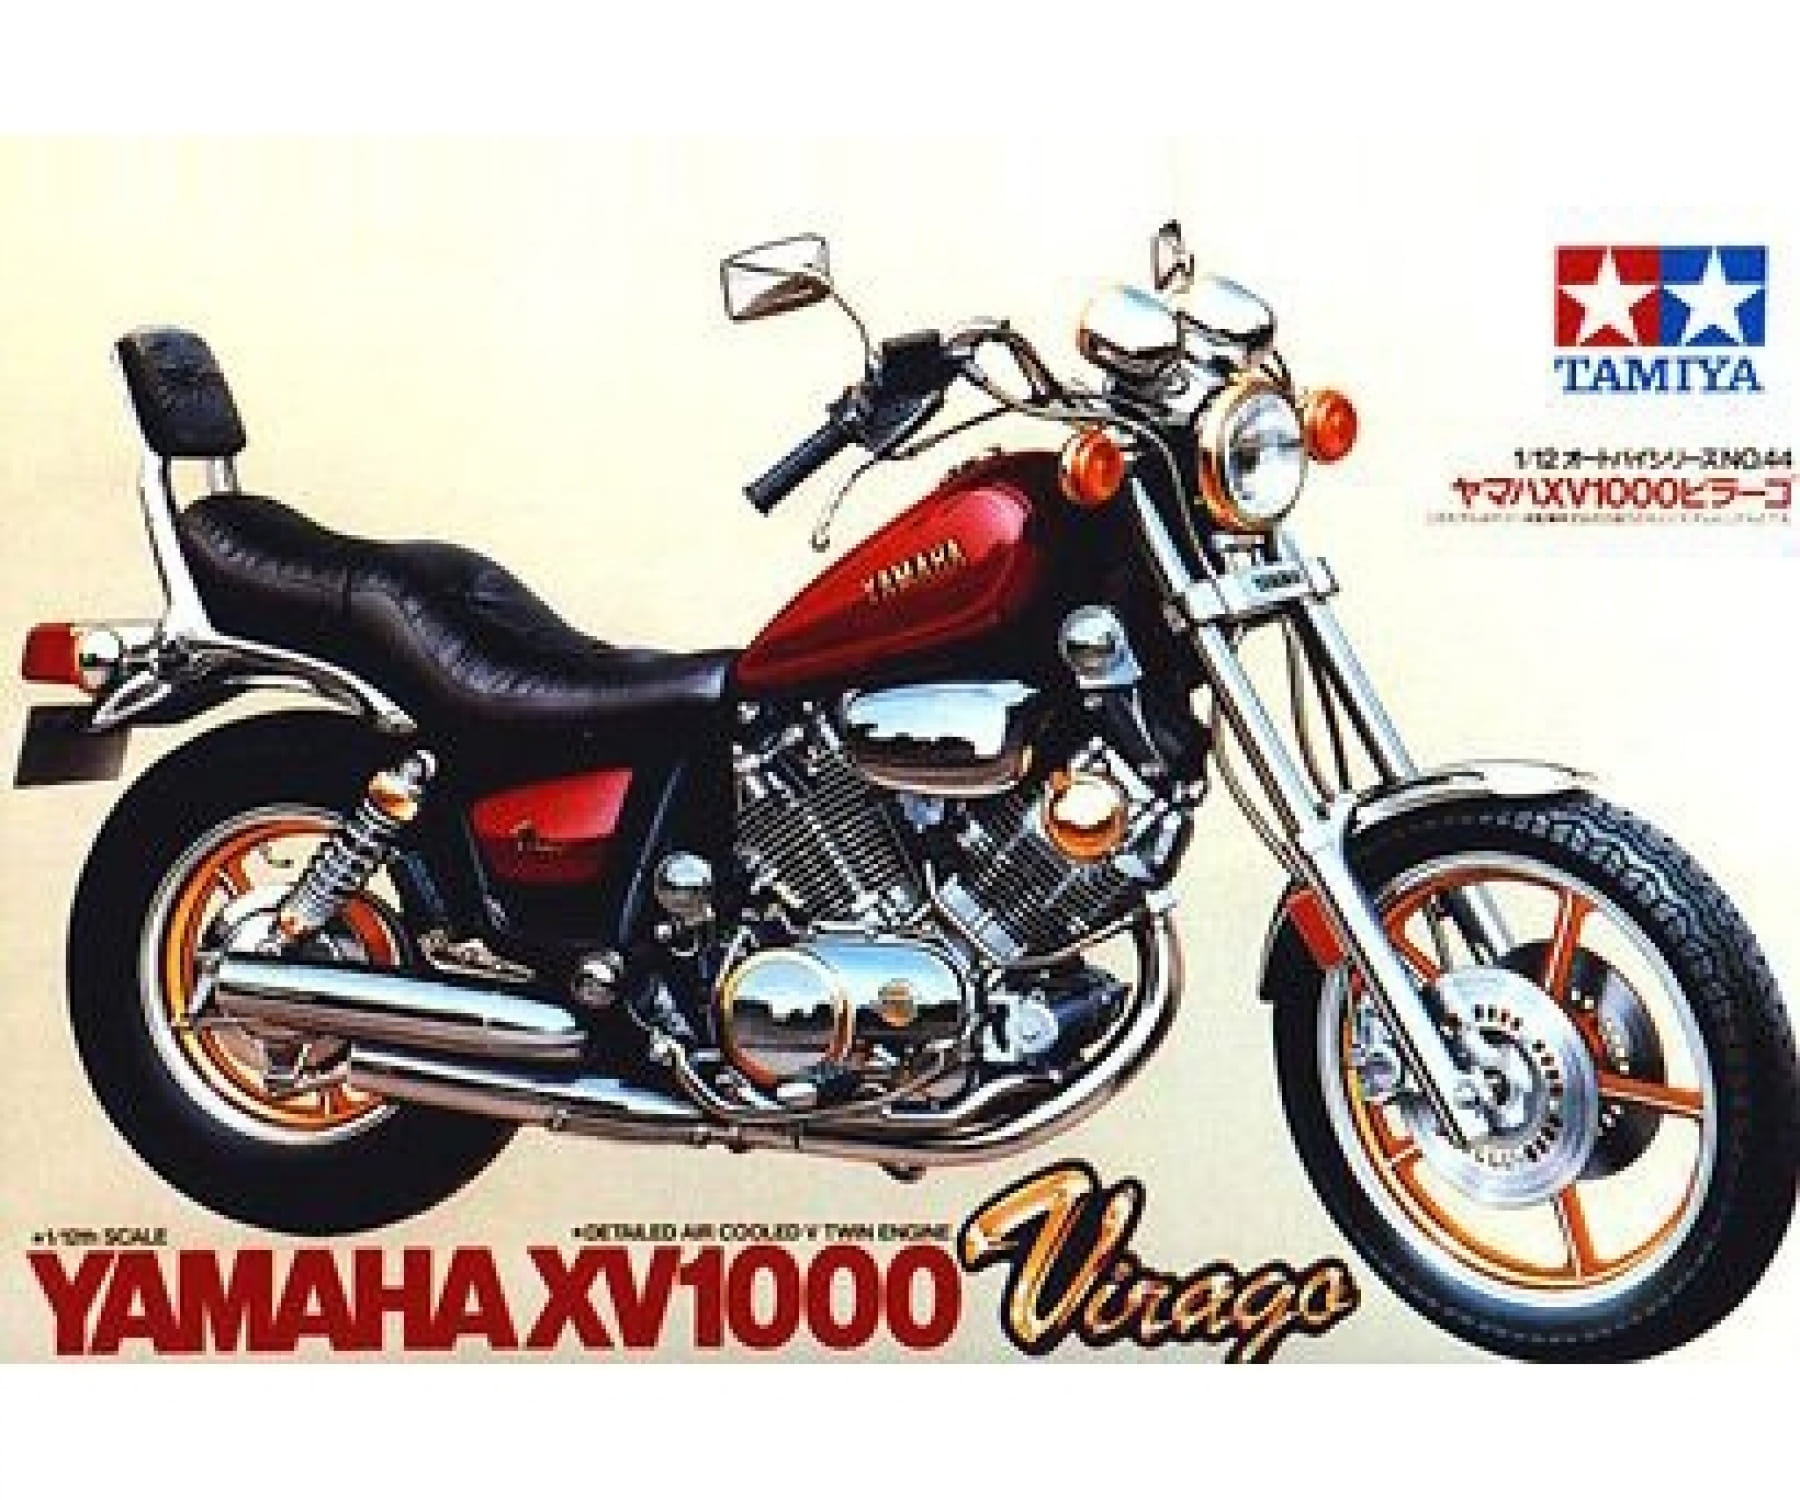 Tamiya Yamaha XV1000 Virago Motorrad 1:12 Plastik Modellbau Bausatz